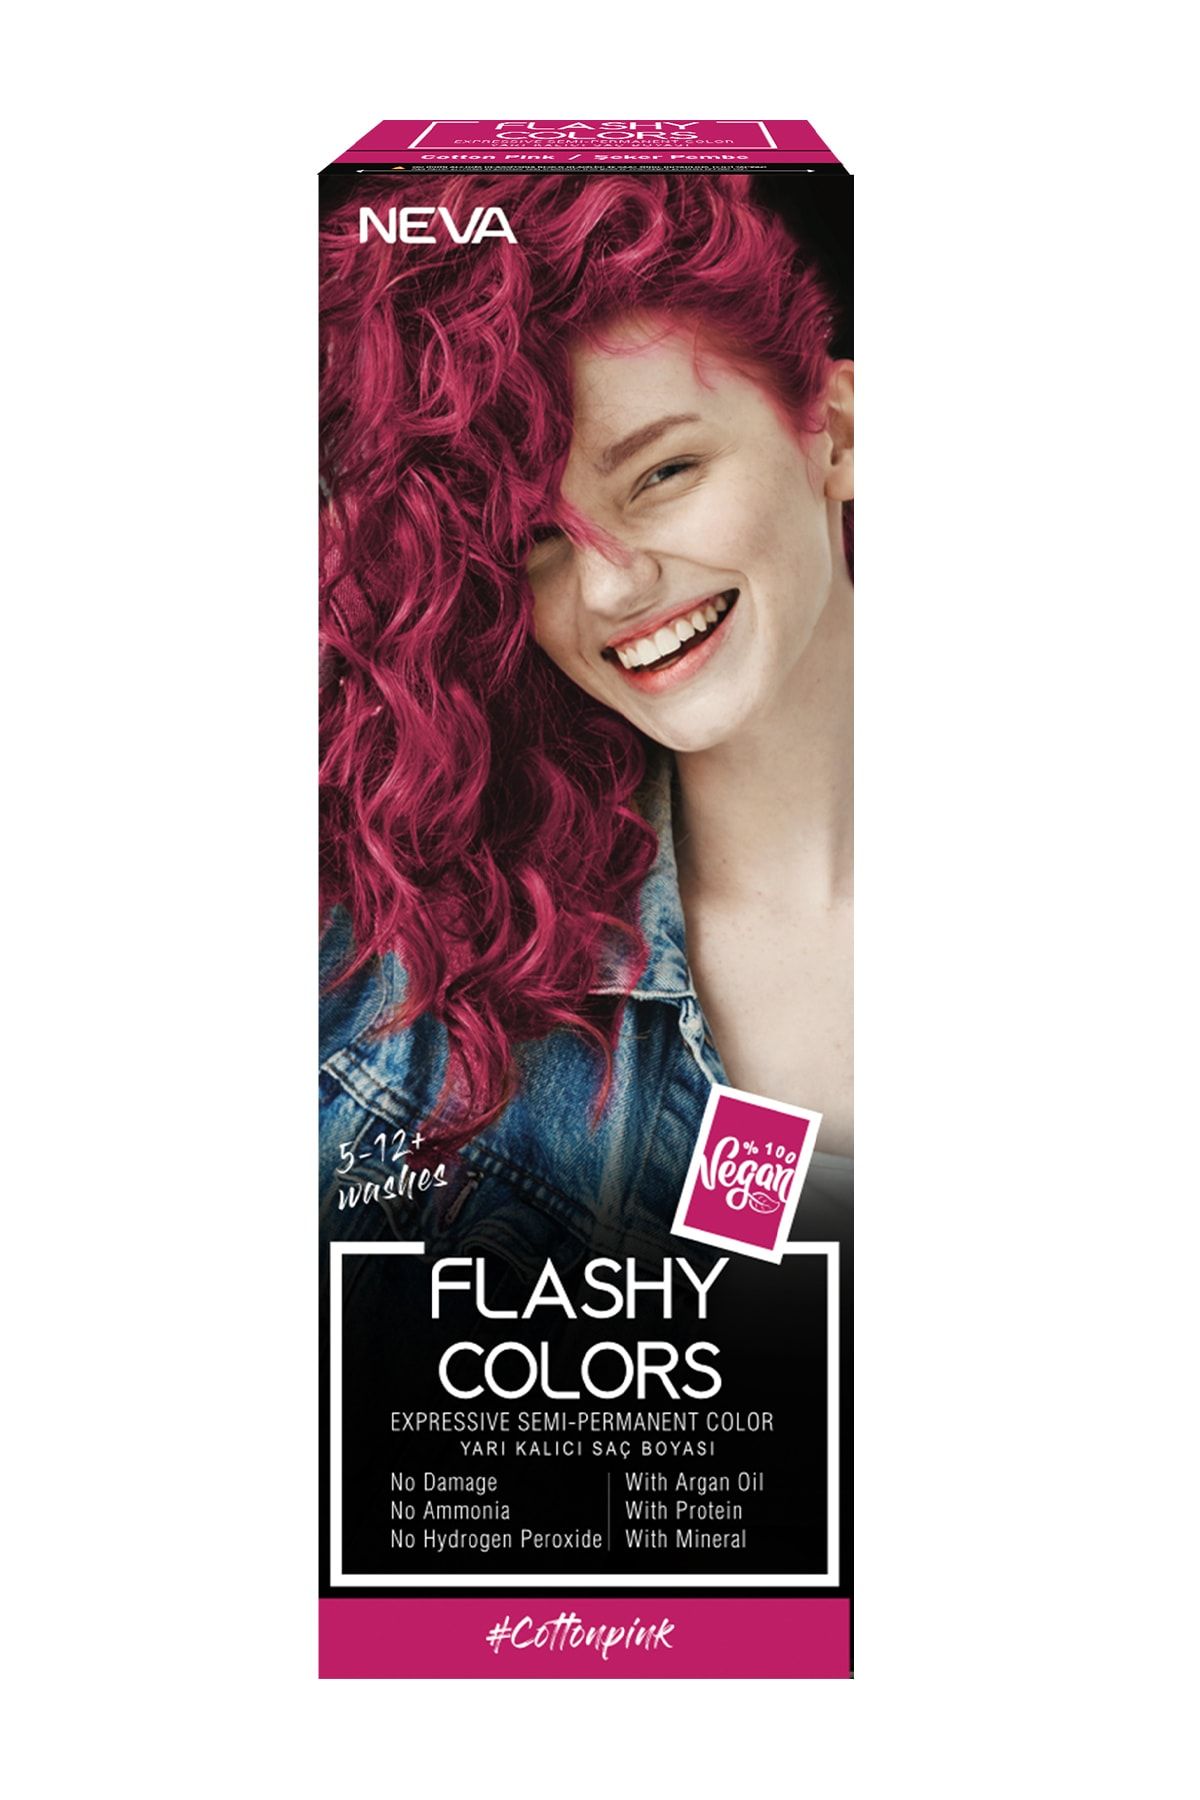 Flashy Colors Yarı Kalıcı Saç Boyası - Cotton Pink / Şeker Pembe 100 ml